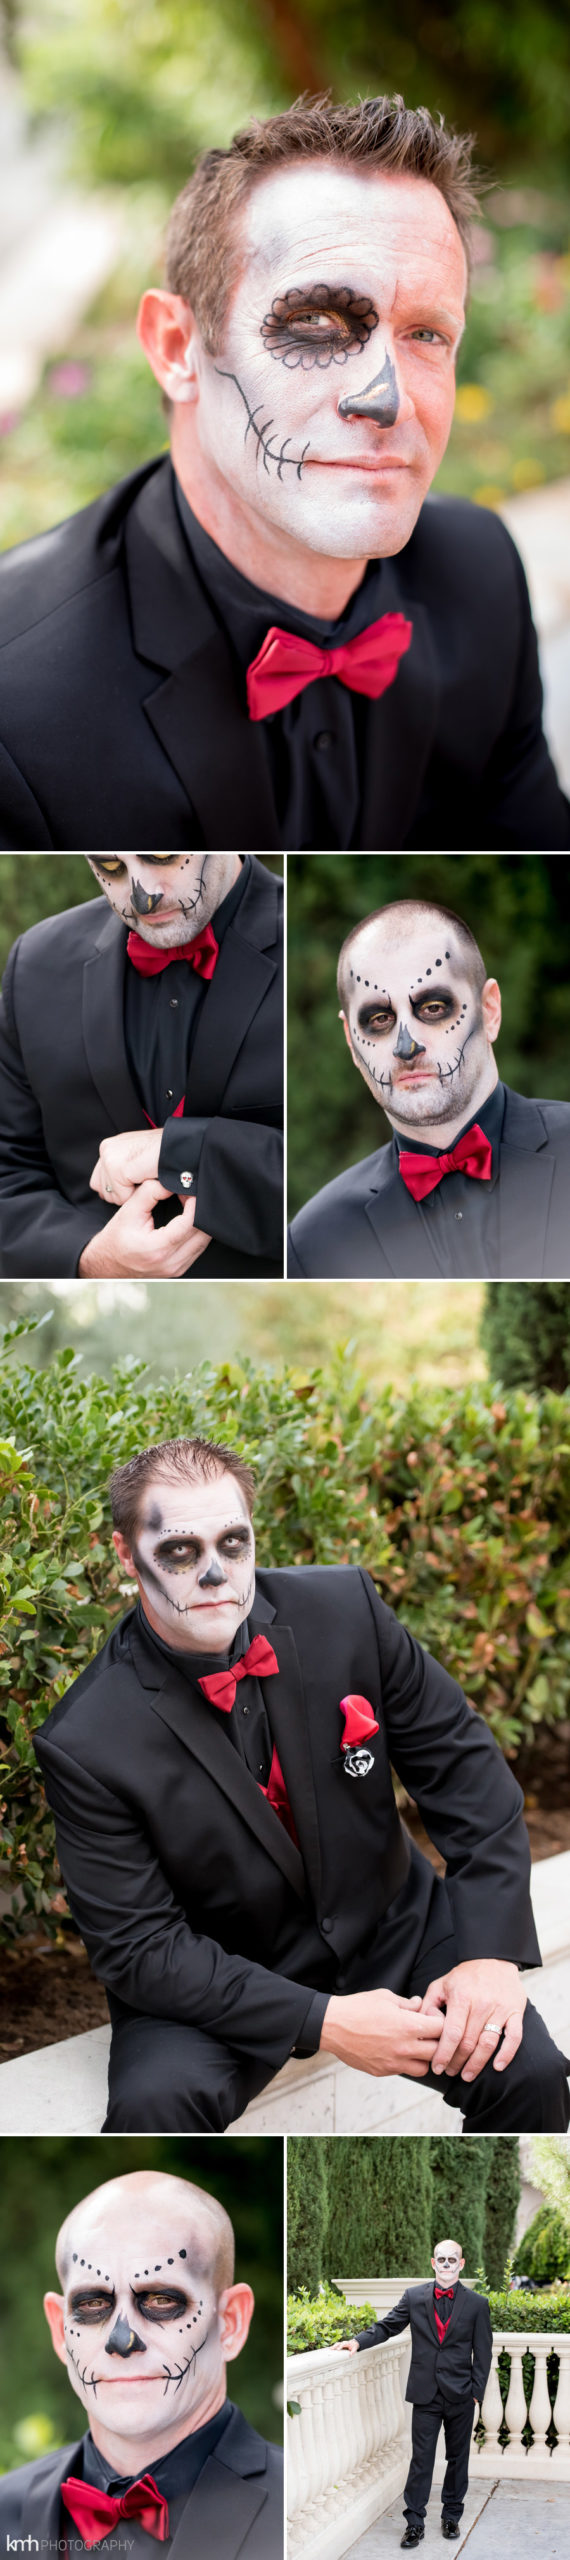 Dia De Los Muertos - Day of the Dead Sugar Skull Wedding | KMH Photography